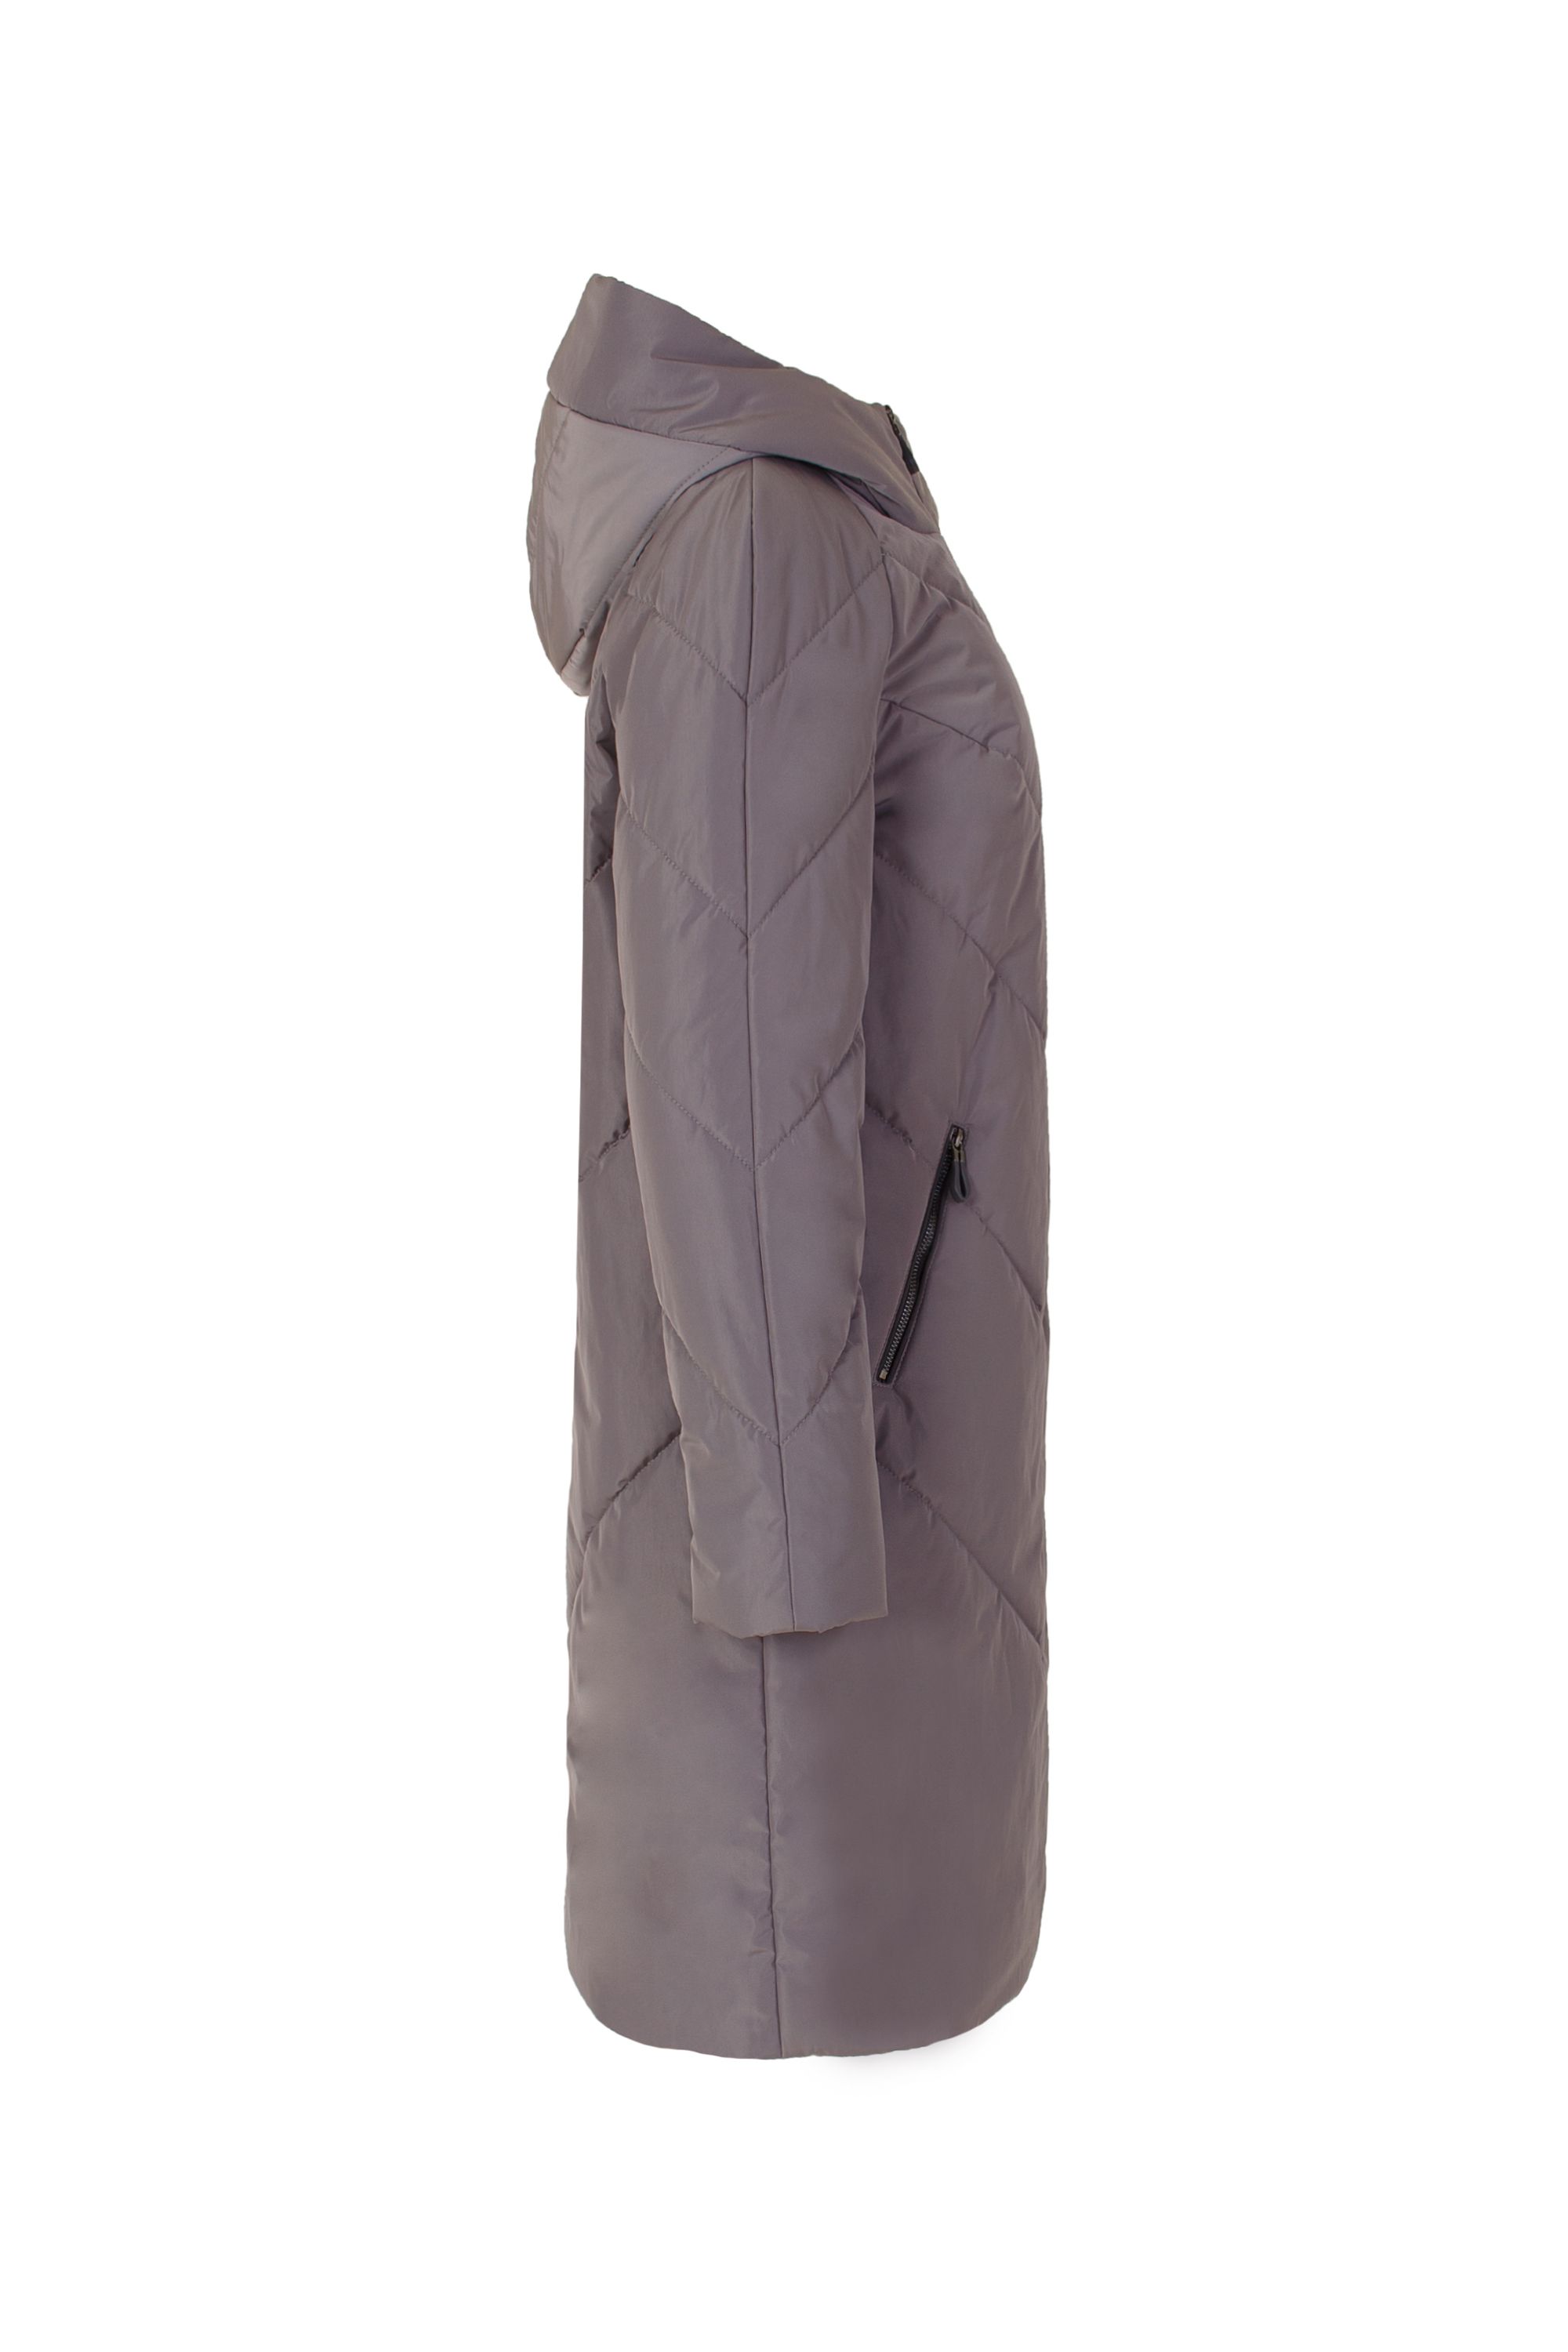 Пальто женское плащевое утепленное 5-9196-4. Фото 2.